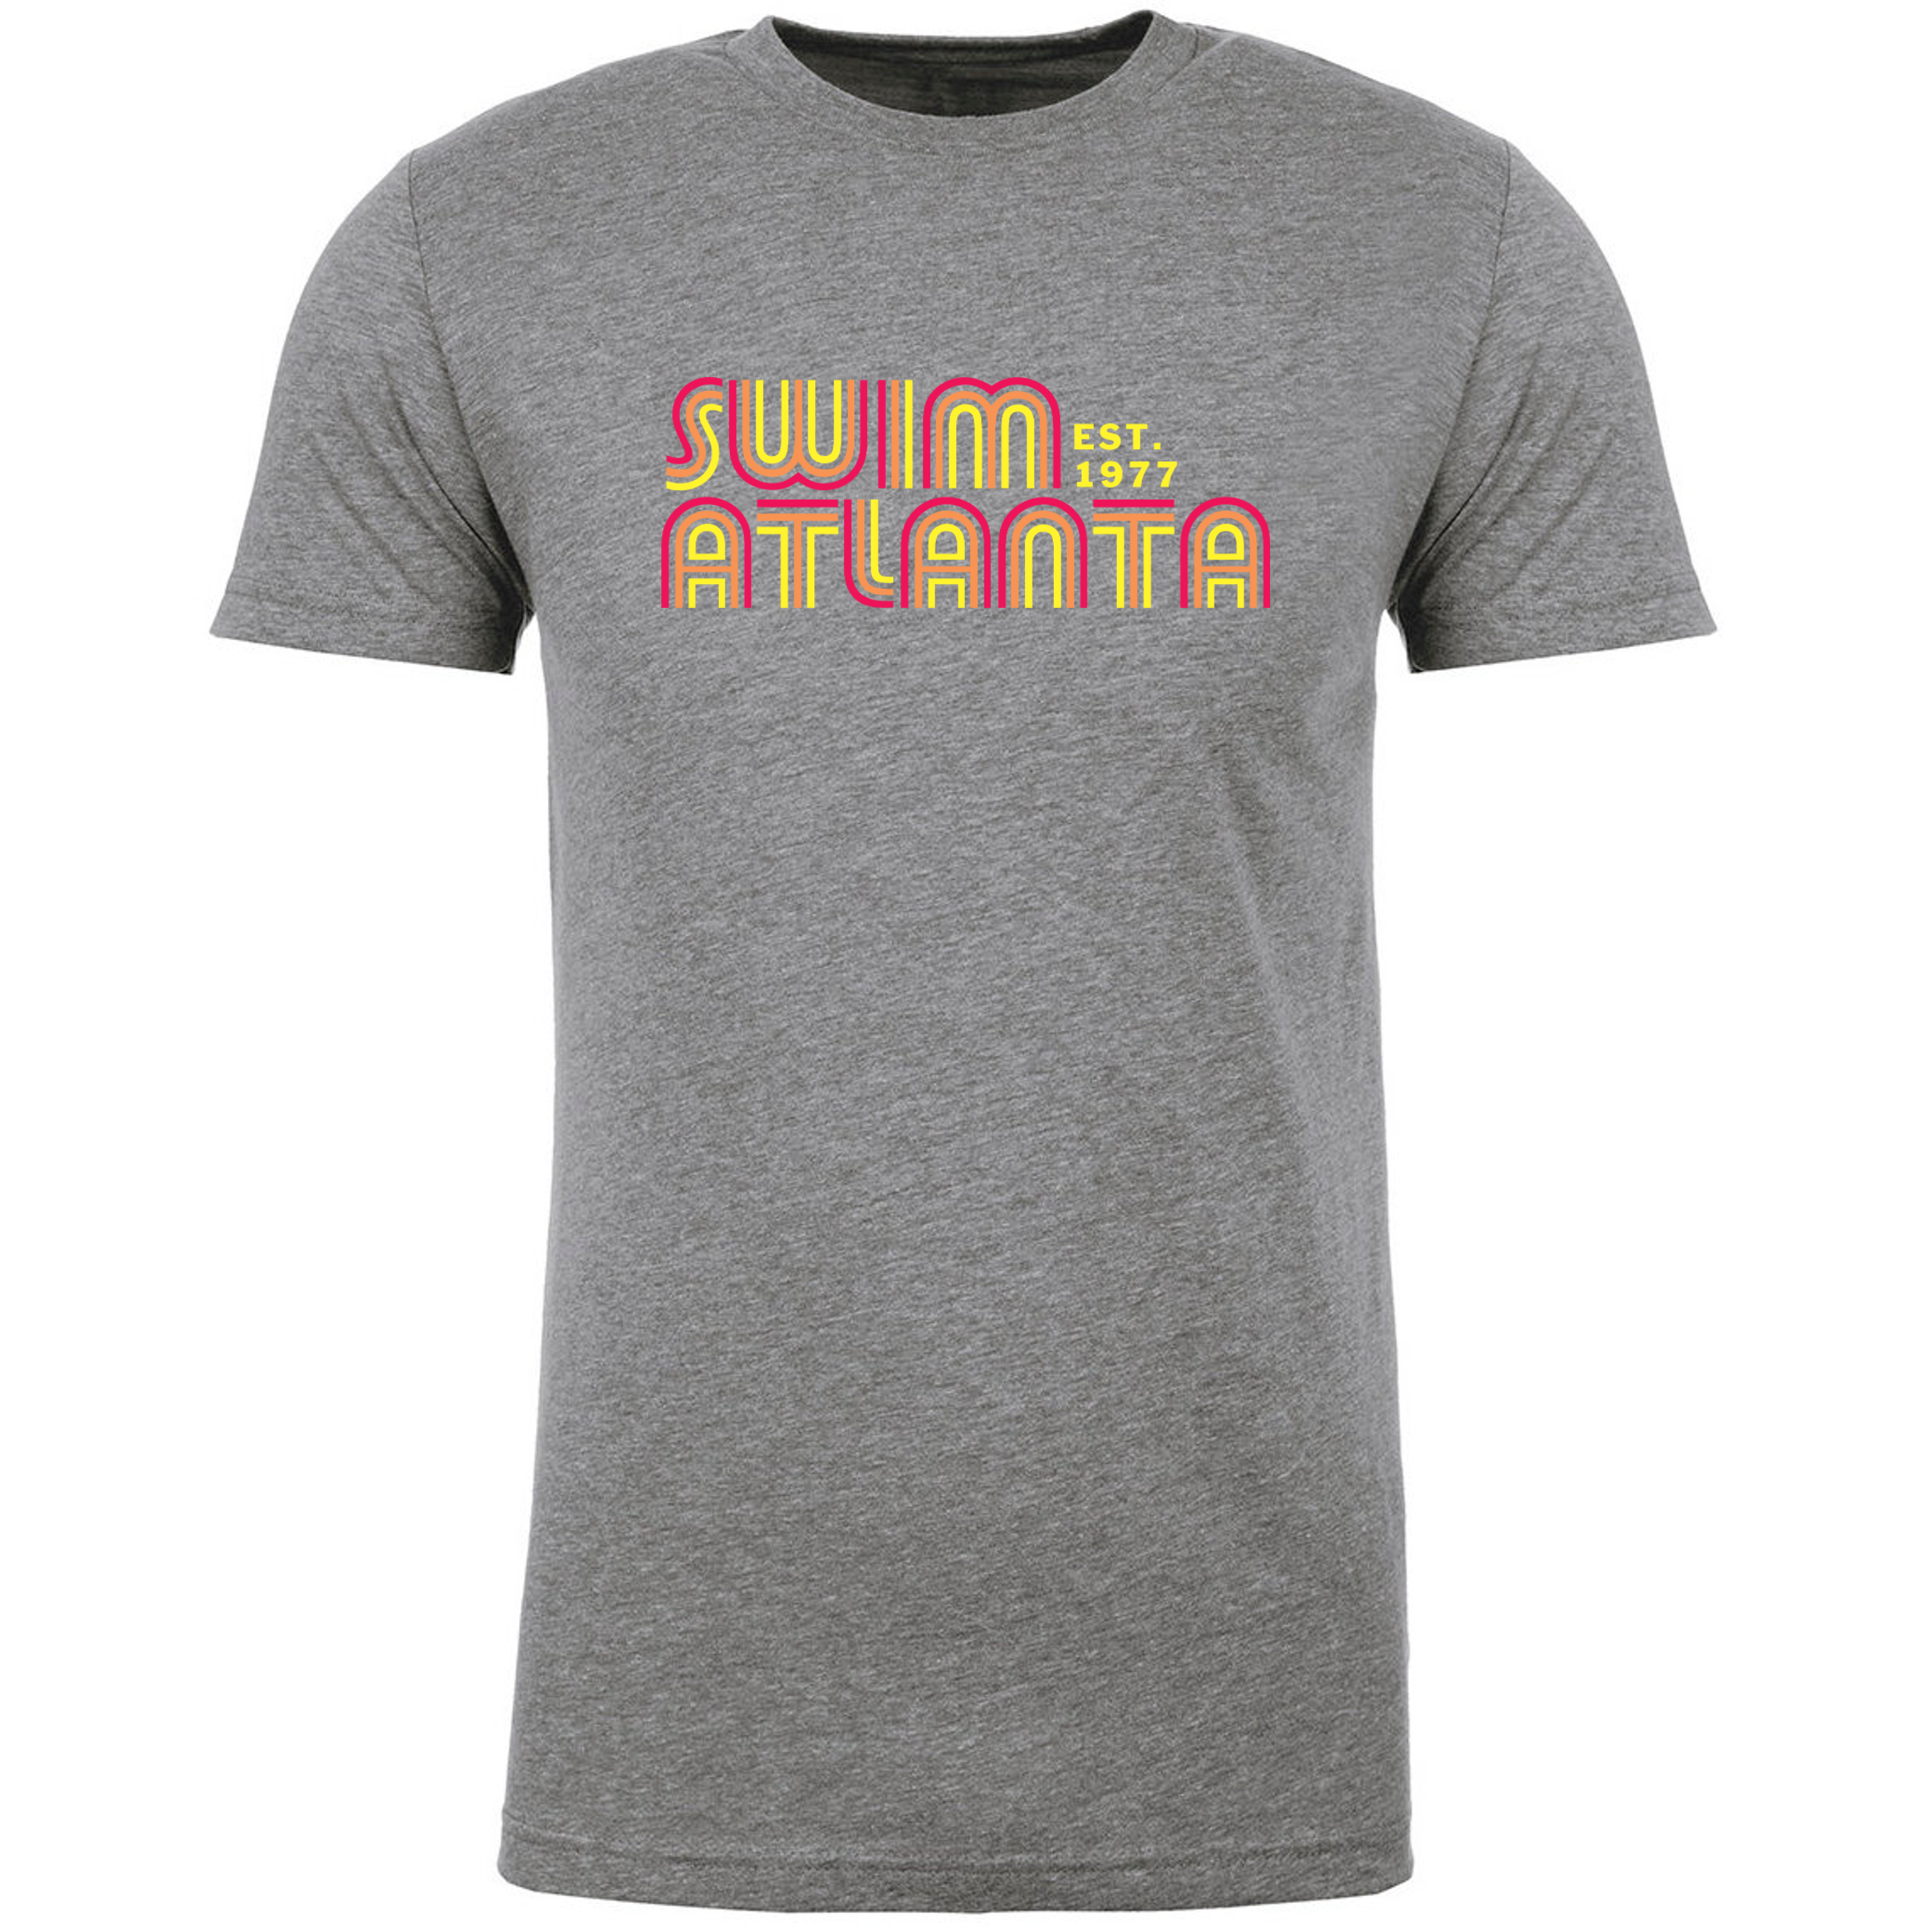 Team T-Shirt #1 - Swim Atlanta